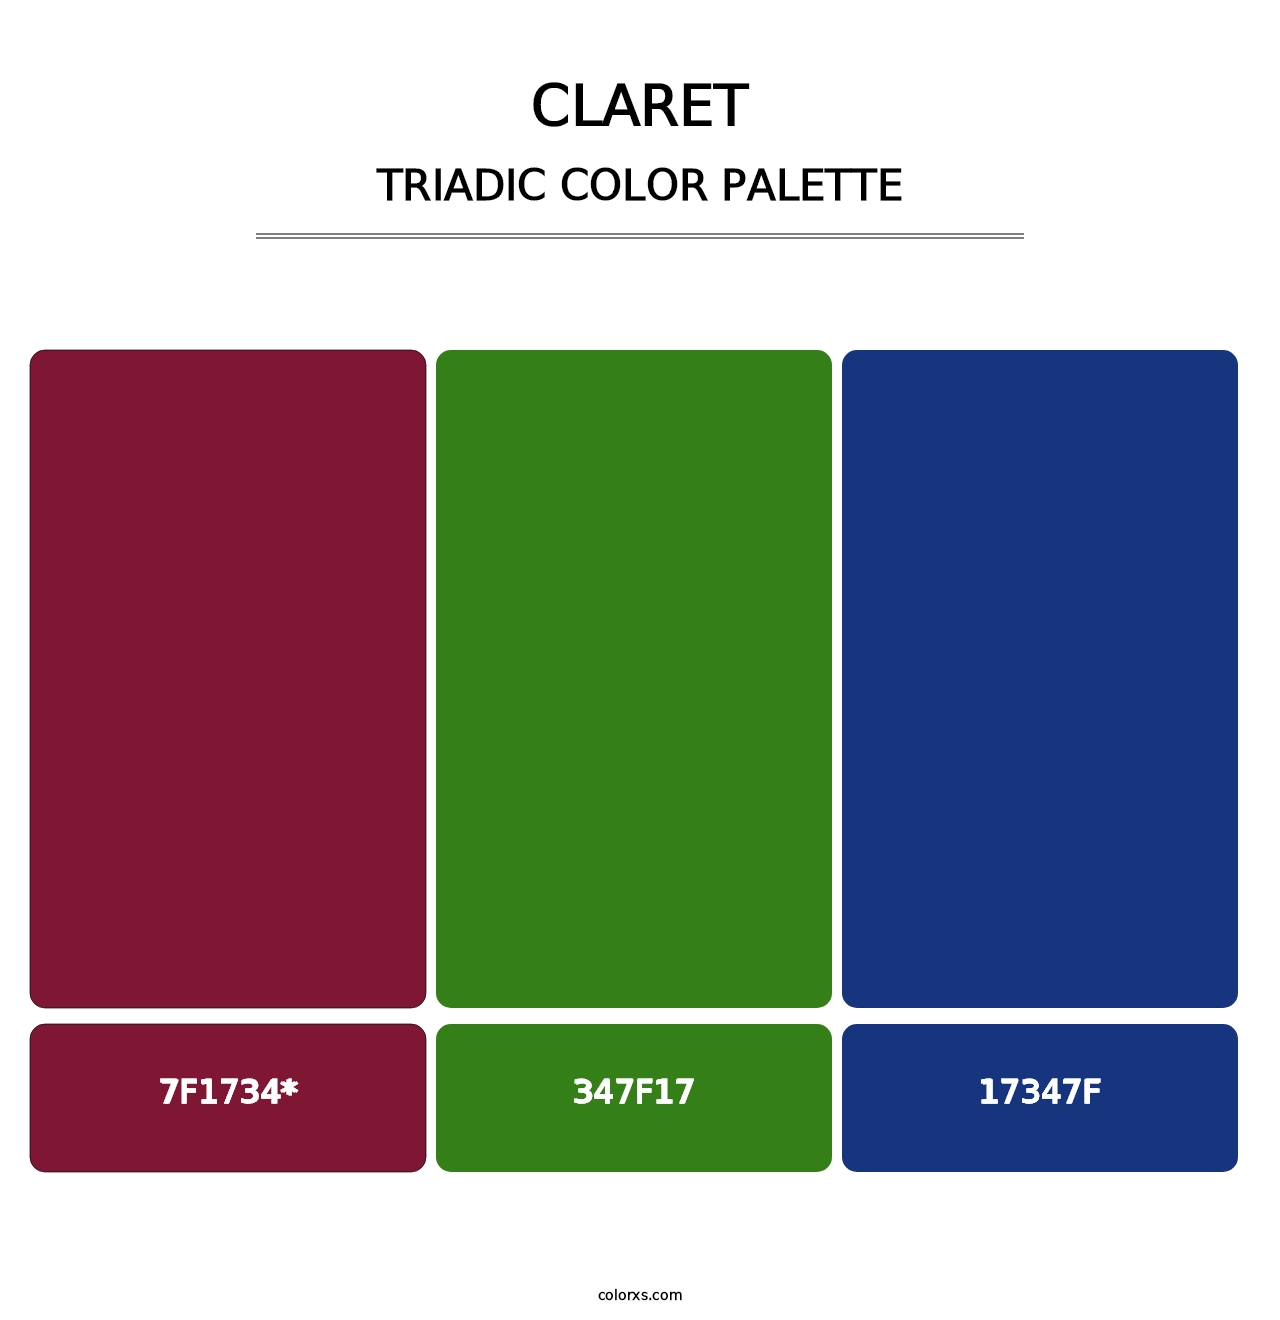 Claret - Triadic Color Palette